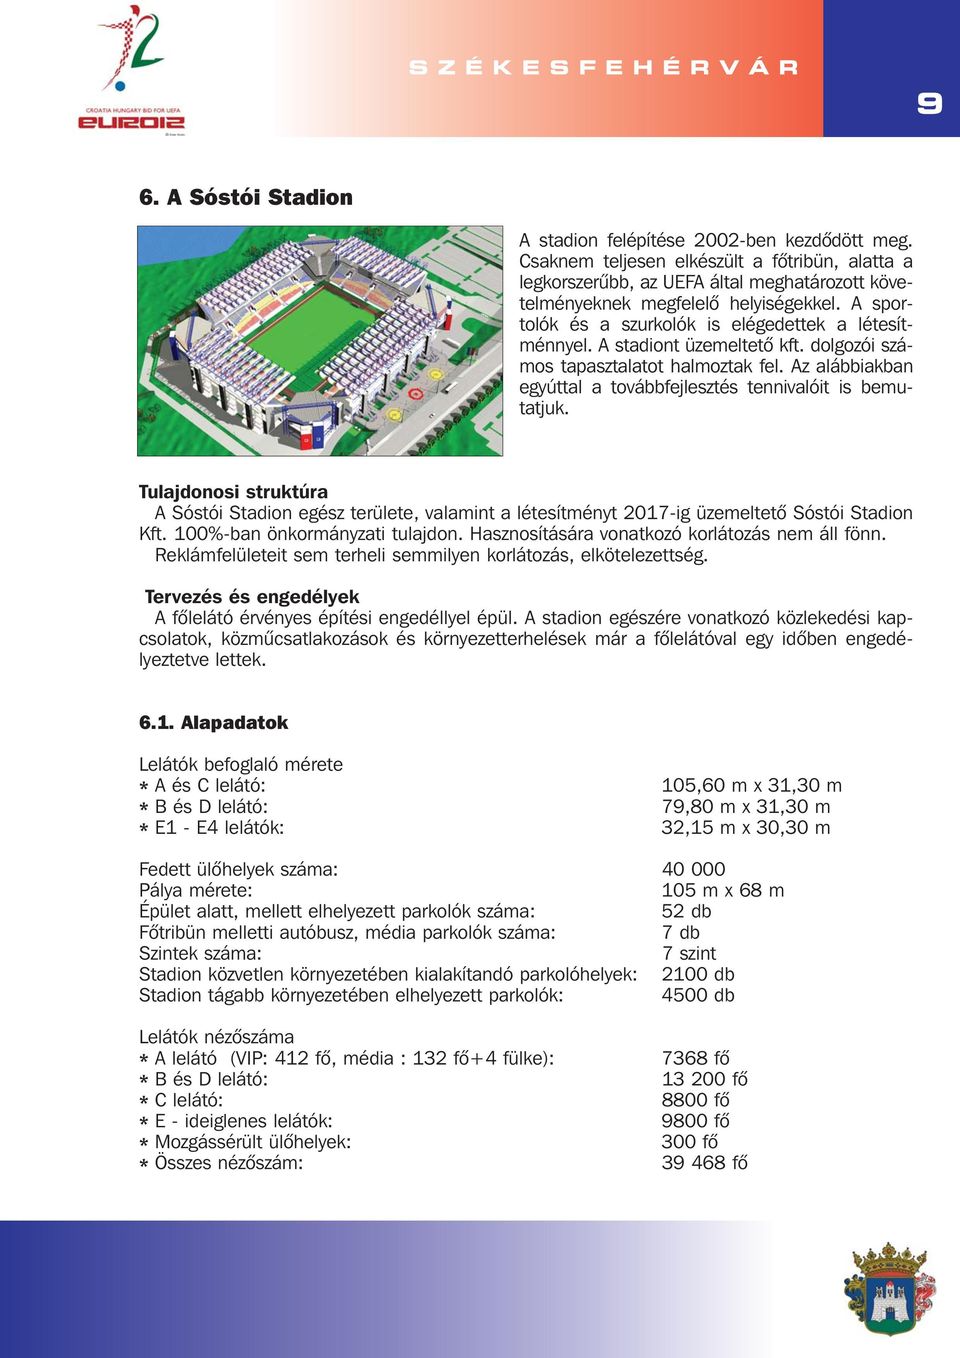 Az alábbiakban egyúttal a továbbfejlesztés tennivalóit is bemutatjuk. Tulajdonosi struktúra A Sóstói Stadion egész területe, valamint a létesítményt 2017-ig üzemeltetõ Sóstói Stadion Kft.